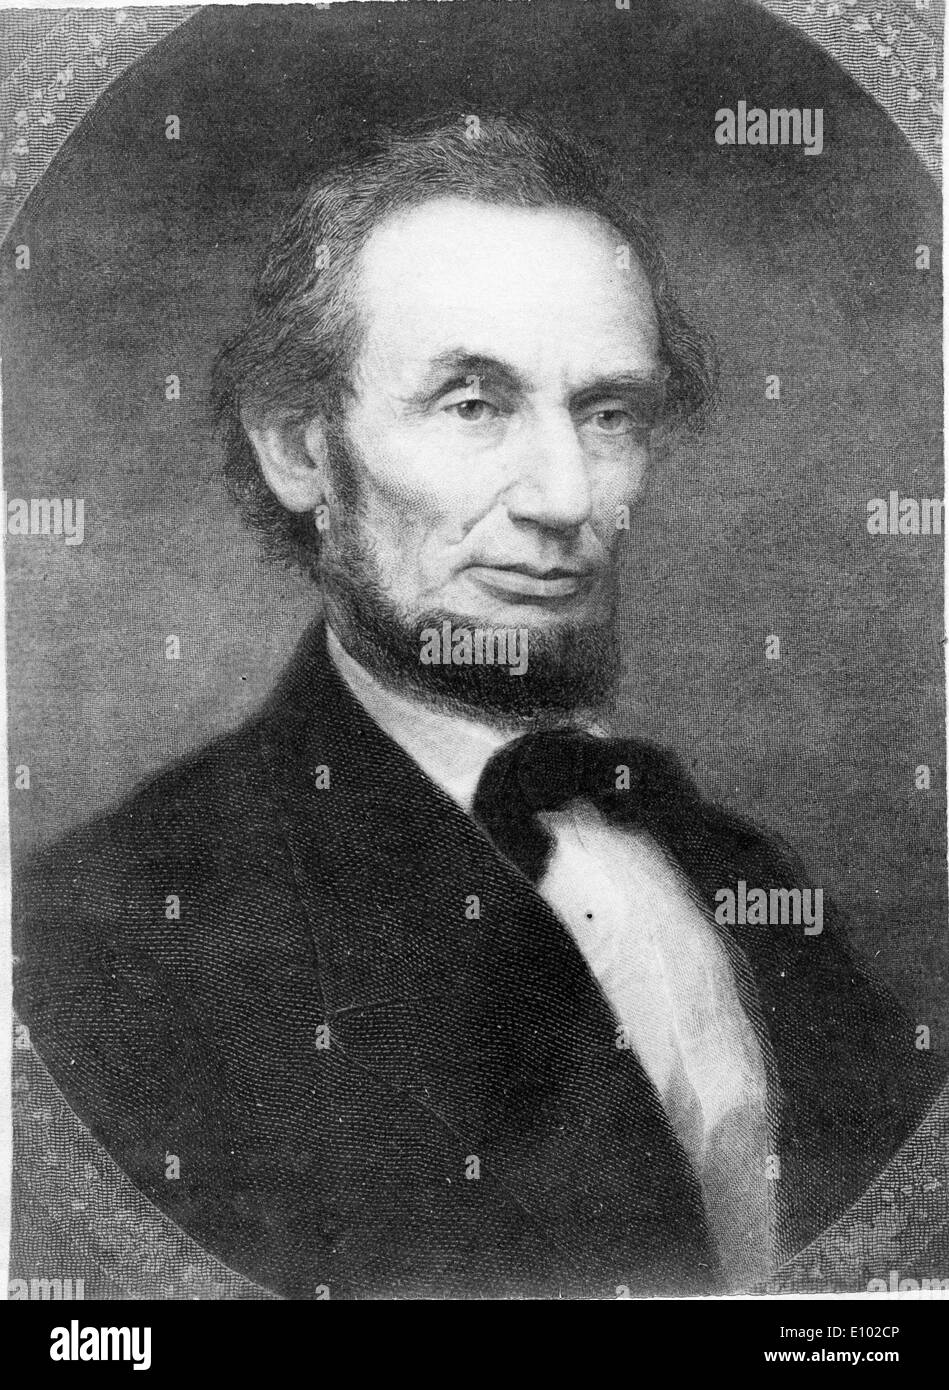 ABRAHAM LINCOLN (12 février 1809 - 15 avril 1865) est le seizième Président des États-Unis. Banque D'Images